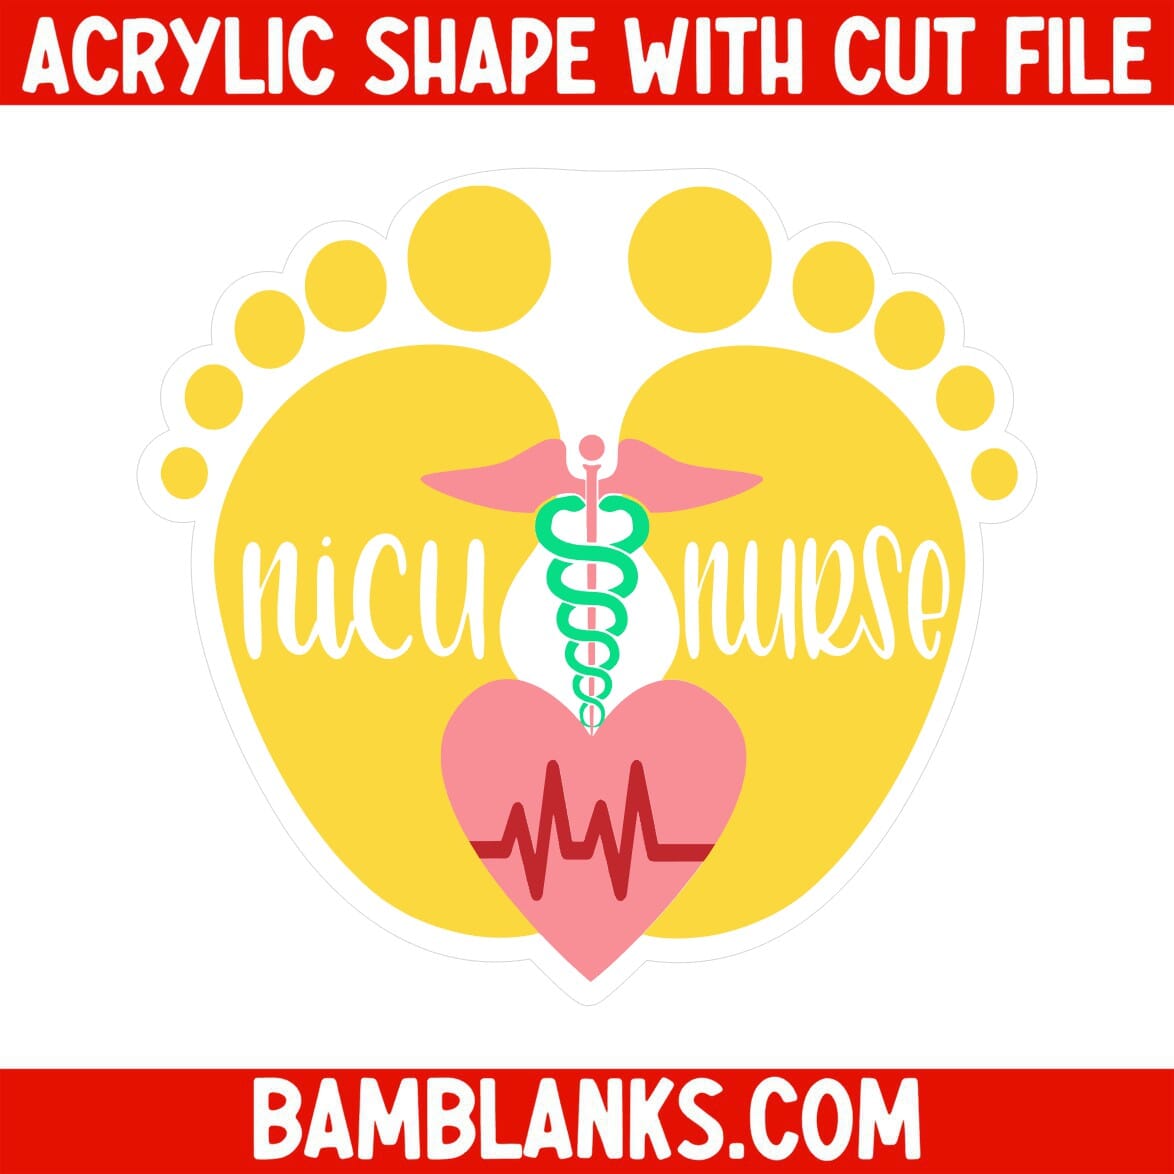 NICU Nurse - Acrylic Shape #086